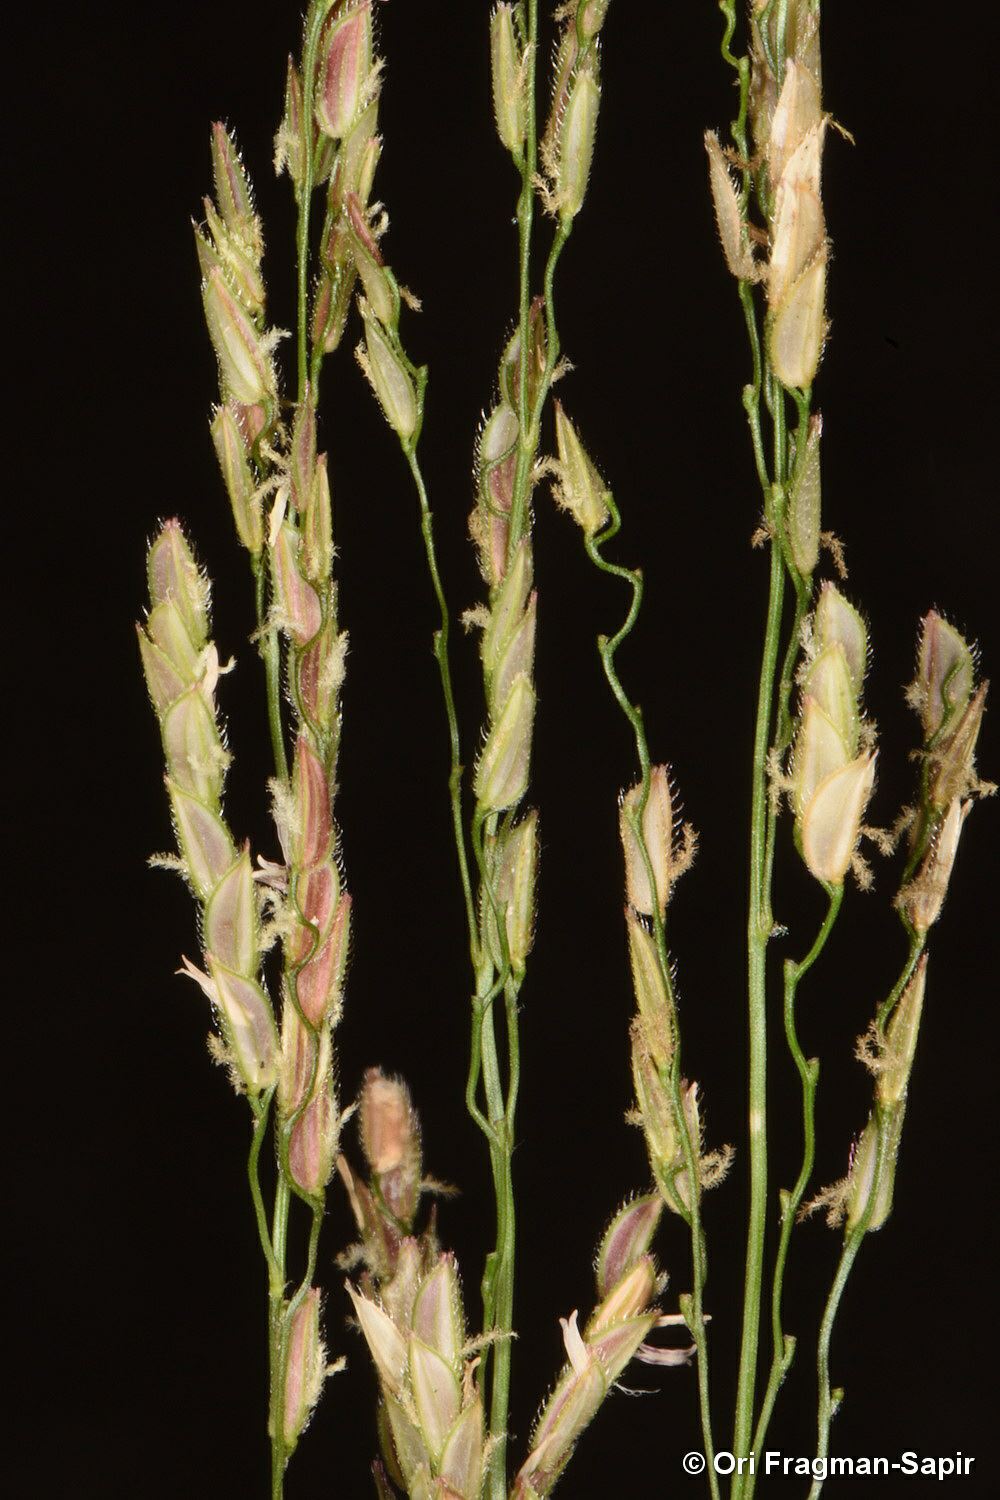 Leersia hexandra - Six-stamened Cut-grass, בת-אורז משושה